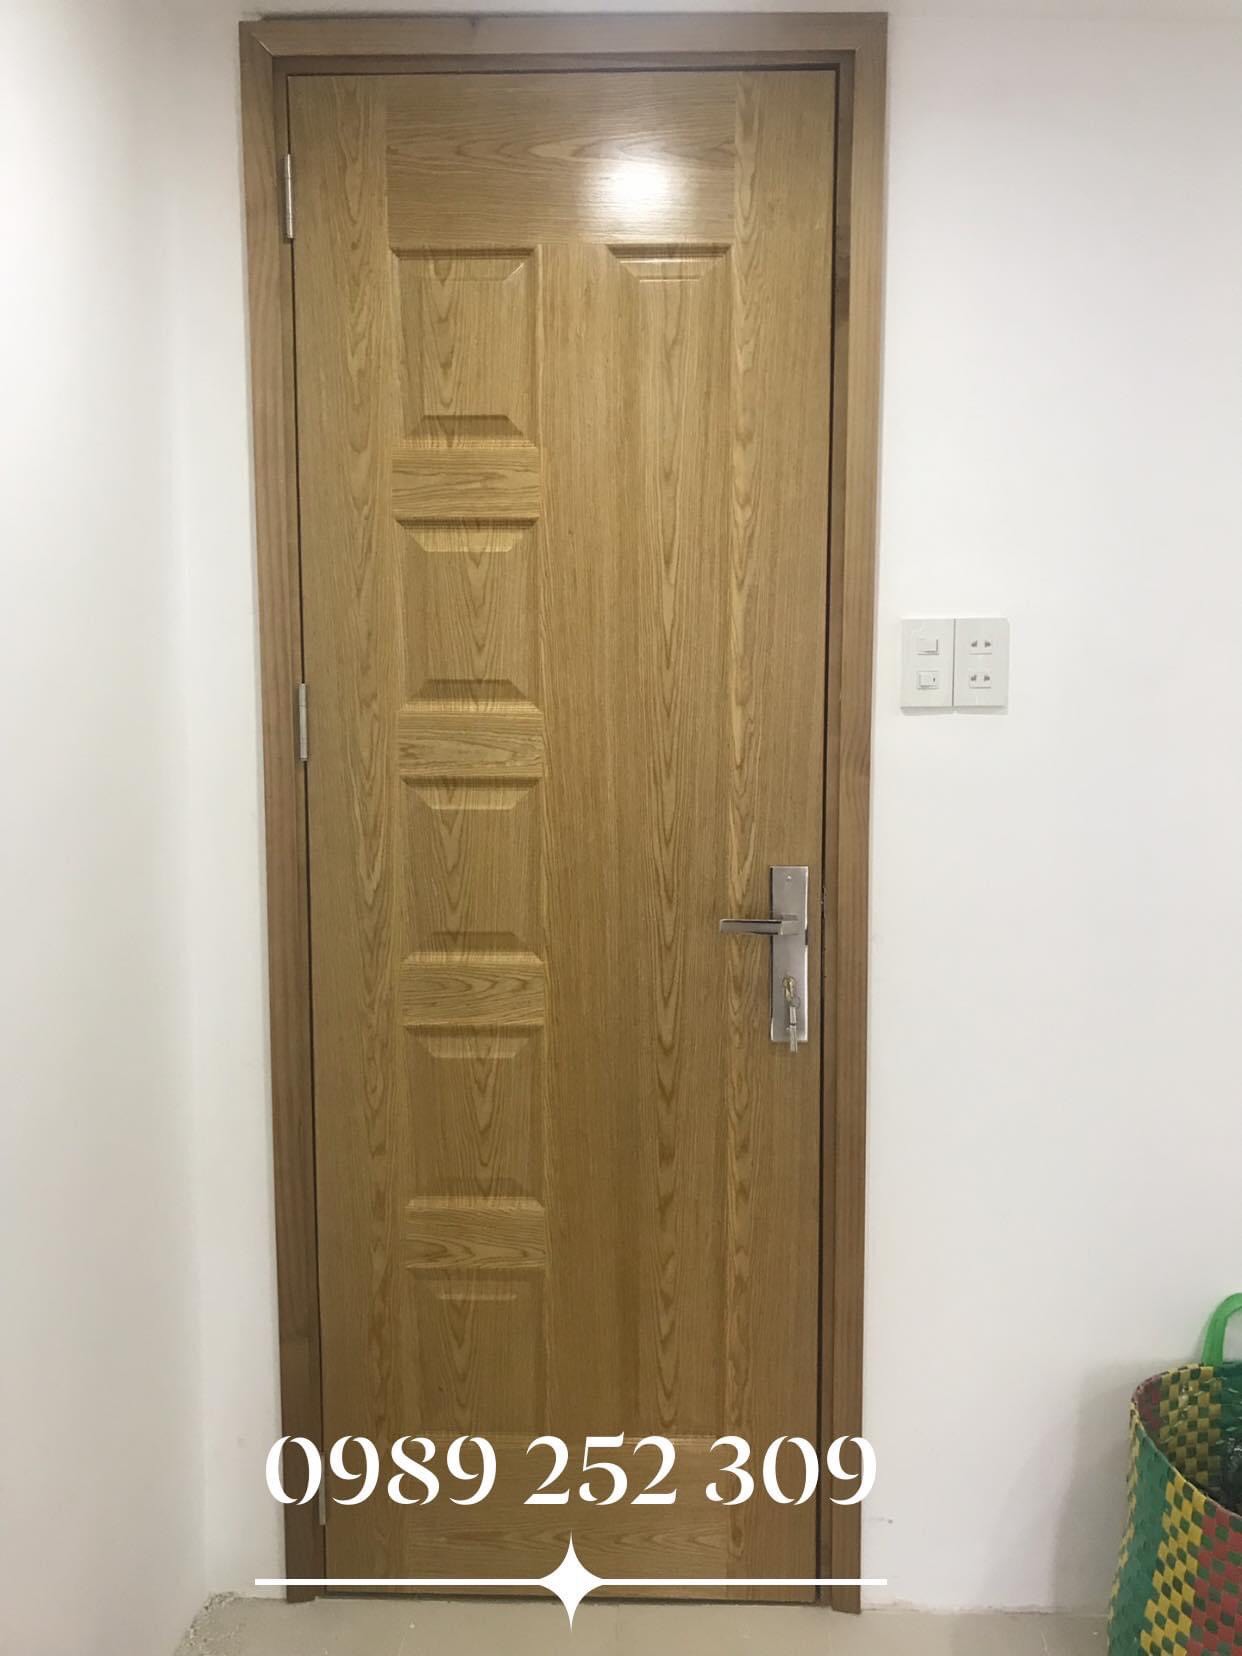 Cửa HDF Veneer nếu đặt bên cạnh bộ cửa gỗ tự nhiên thì cũng khó để phân biệt.